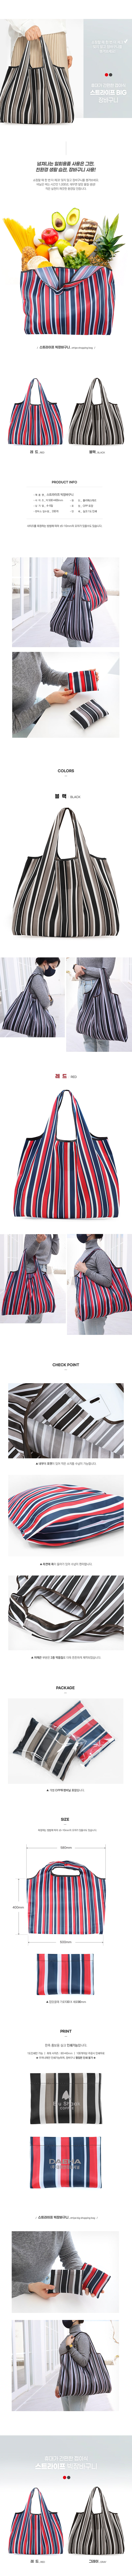 stripe_shopping_bag-min_155149.jpg